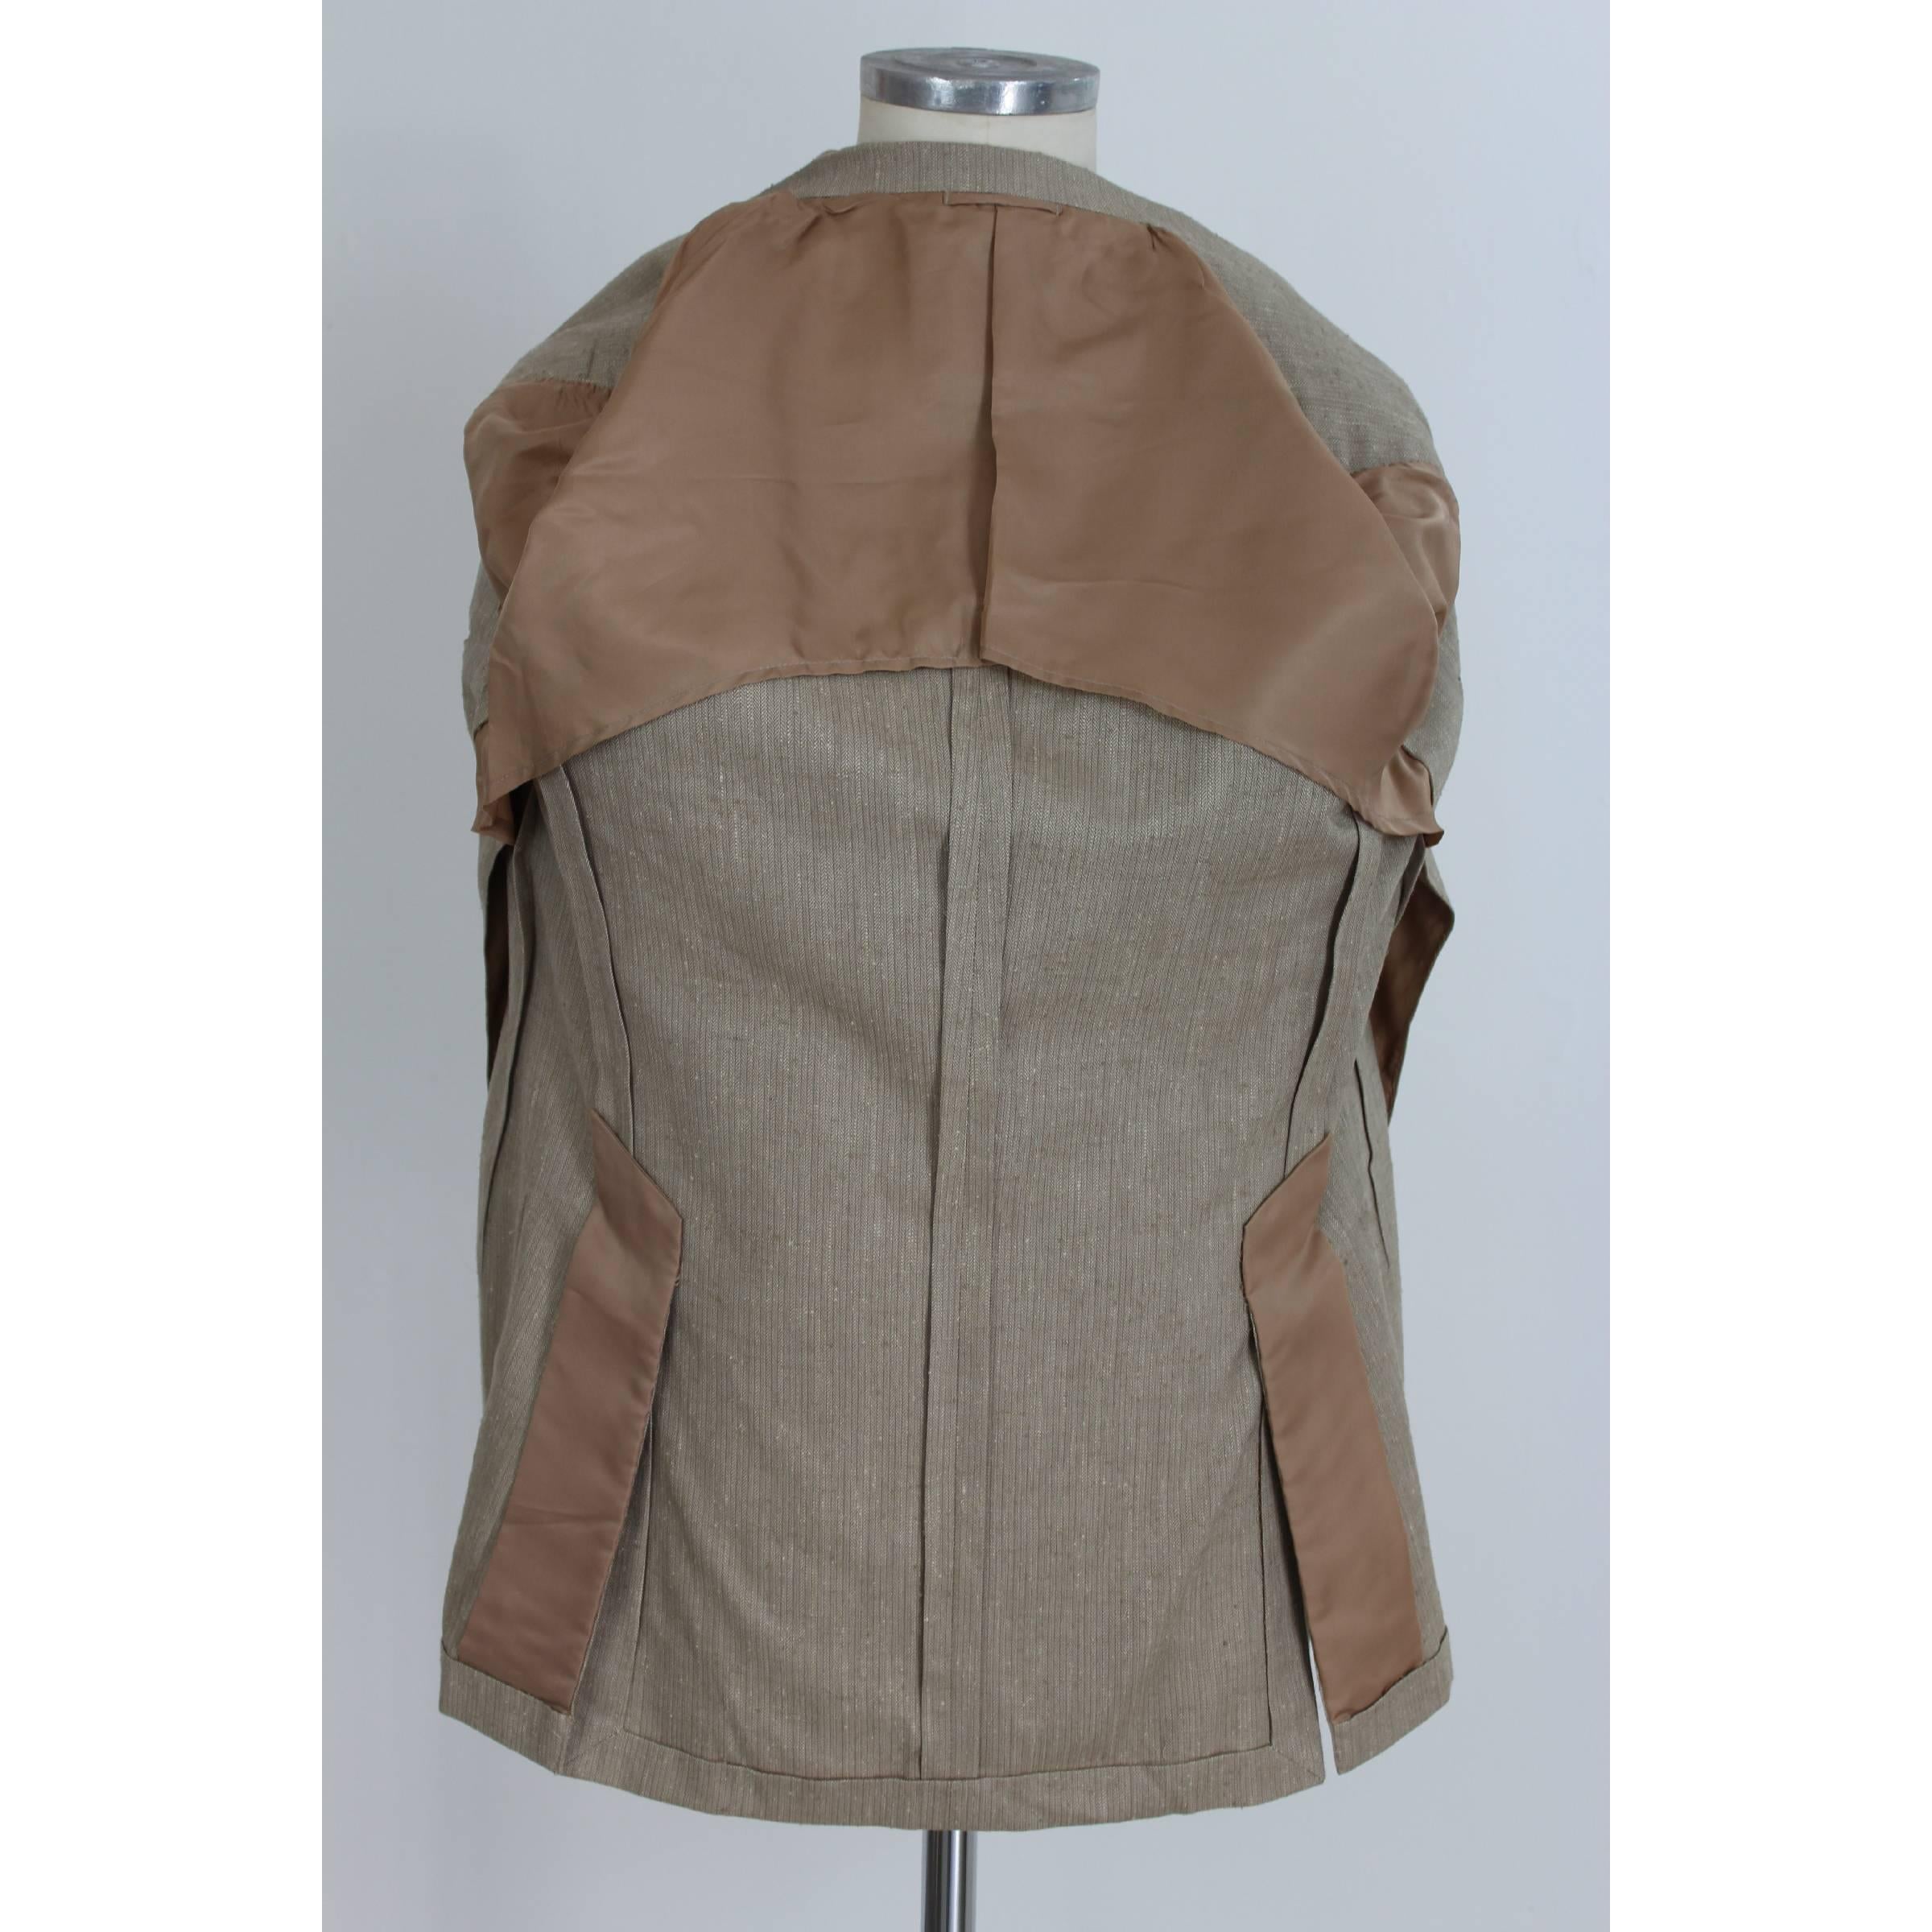 Burberry Prorsum Blazer Beige Vintage Wool  Silk Jacket, 1980s For Sale 1